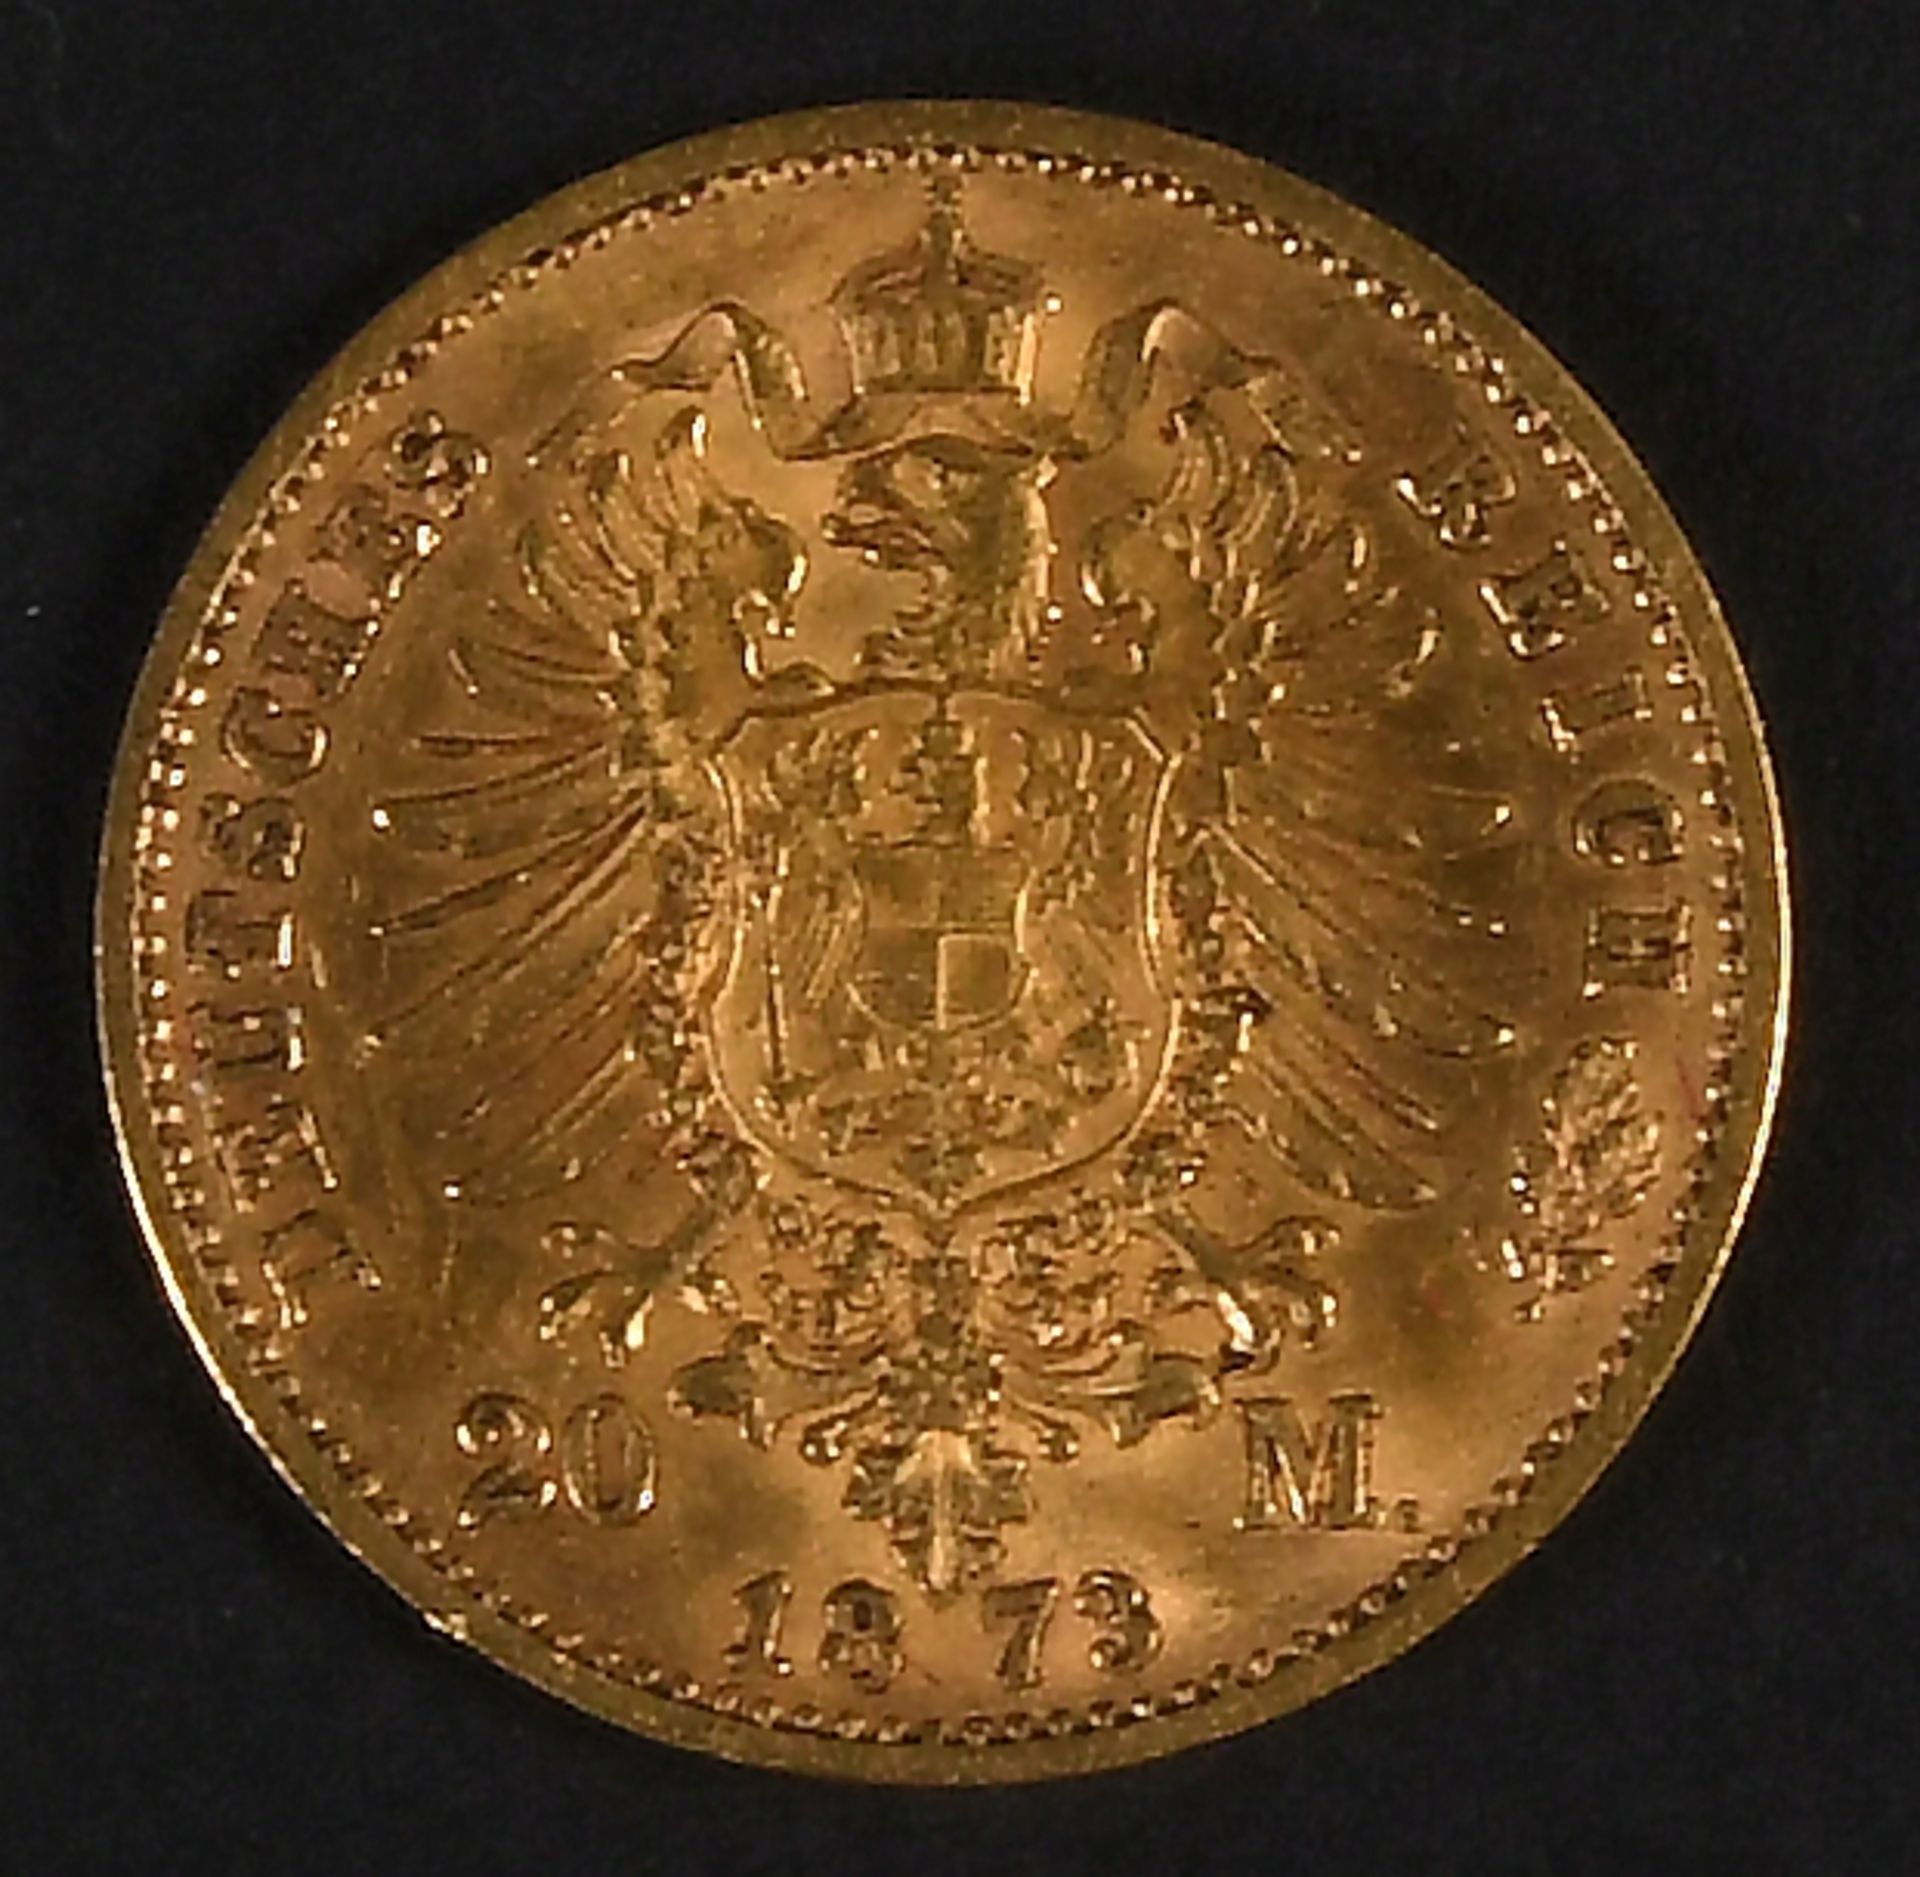 Goldmünze - 20 Mark, Deutsches Reich, Sachsen 1873 - Image 3 of 3